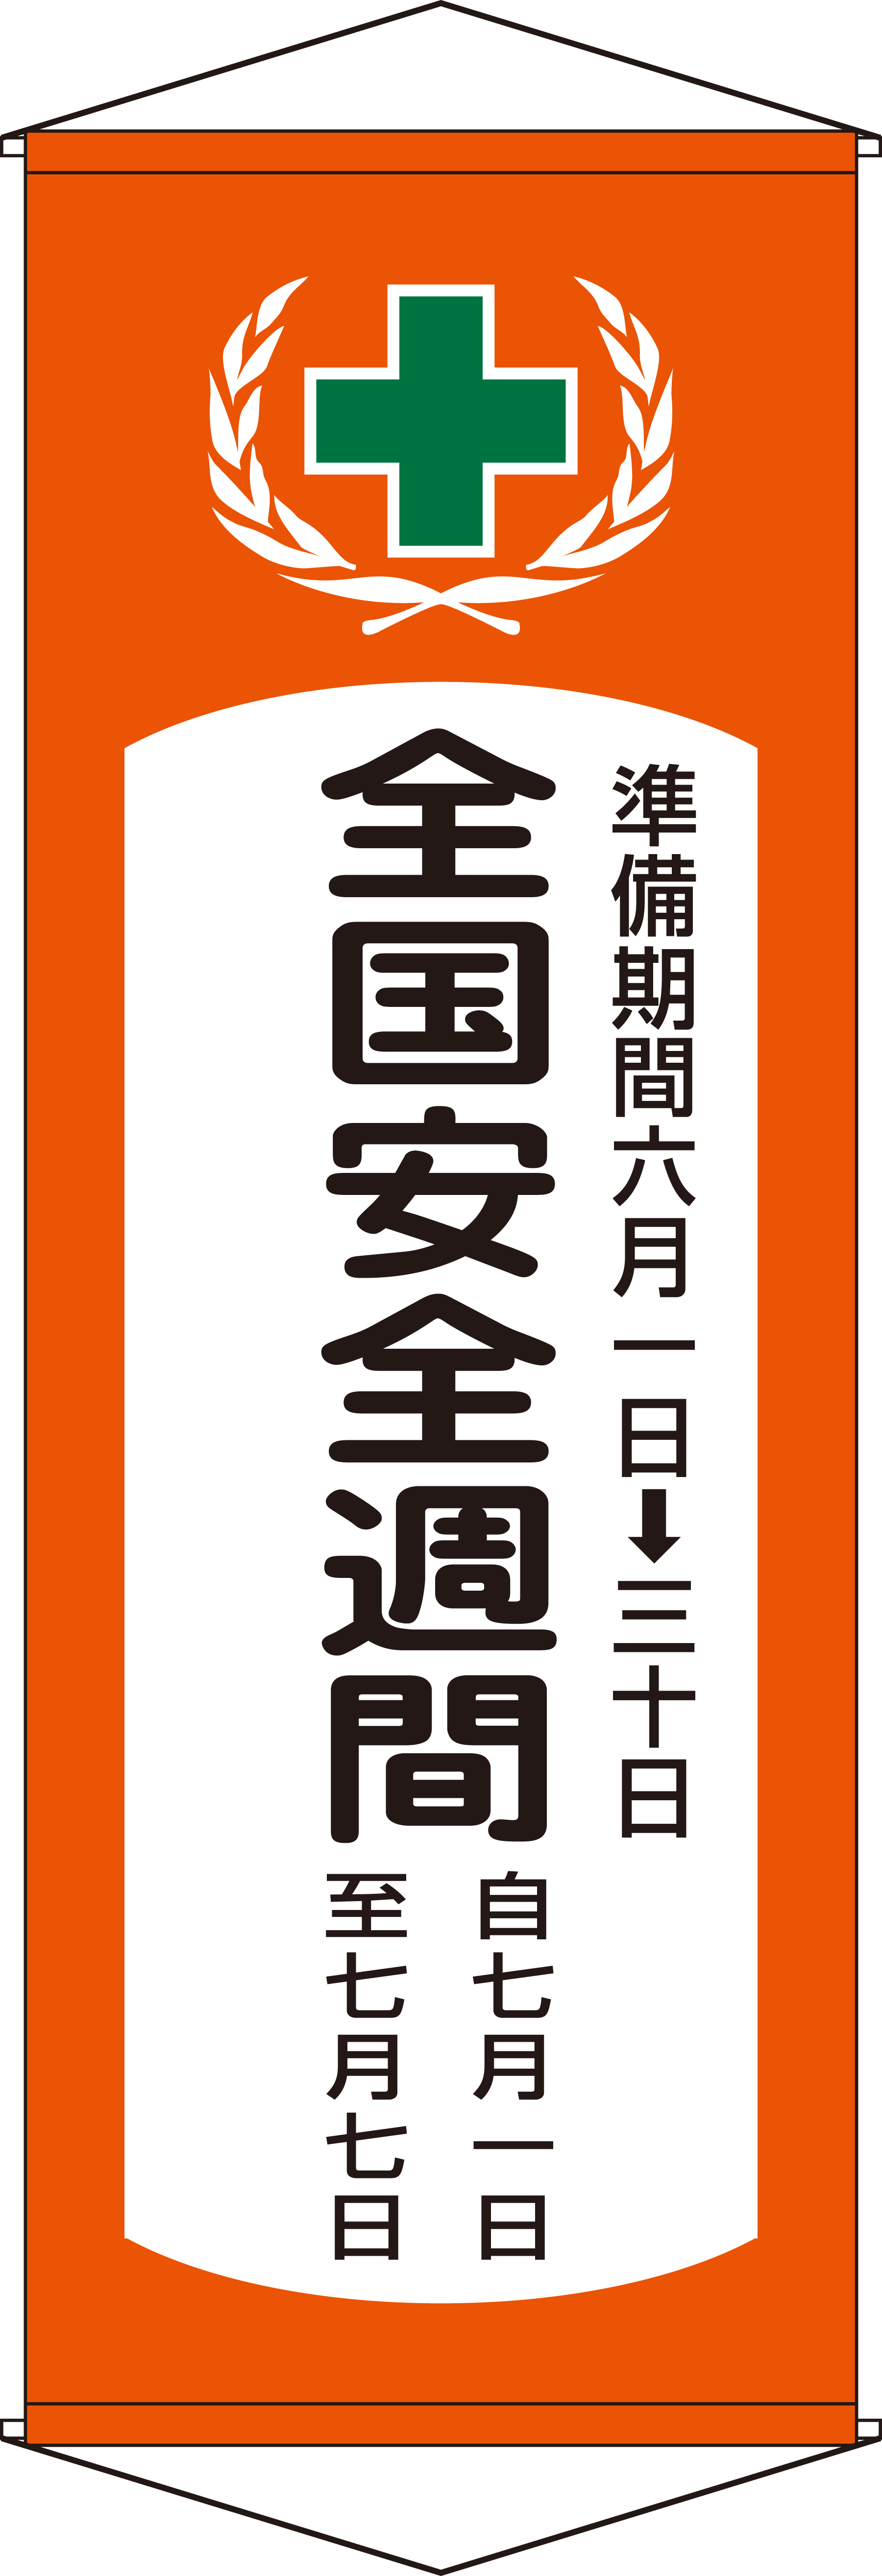 たれ幕 124901 幕V,（安全標識・安全用品 日本緑十字社）,の通販 詳細情報,電設資材・電線・ケーブル・安全用品 ネット通販 Watanabe  電設資材 電線 ケーブル ネット 通販 Watanabe